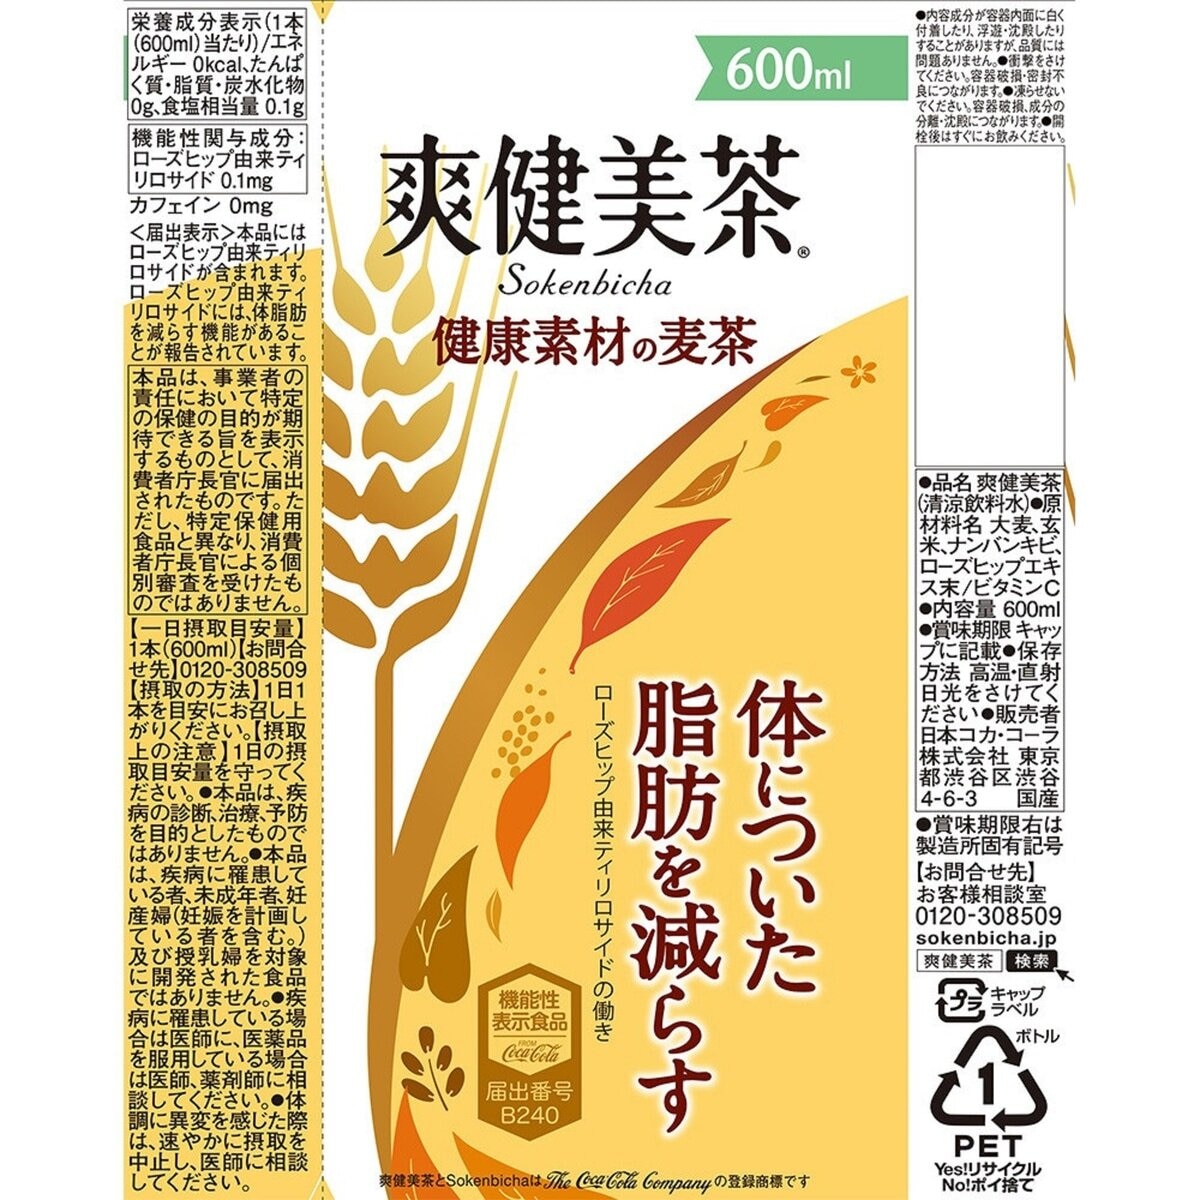 爽健美茶 健康素材の麦茶 600ml x 24本 x 2ケース ペットボトル | Costco Japan